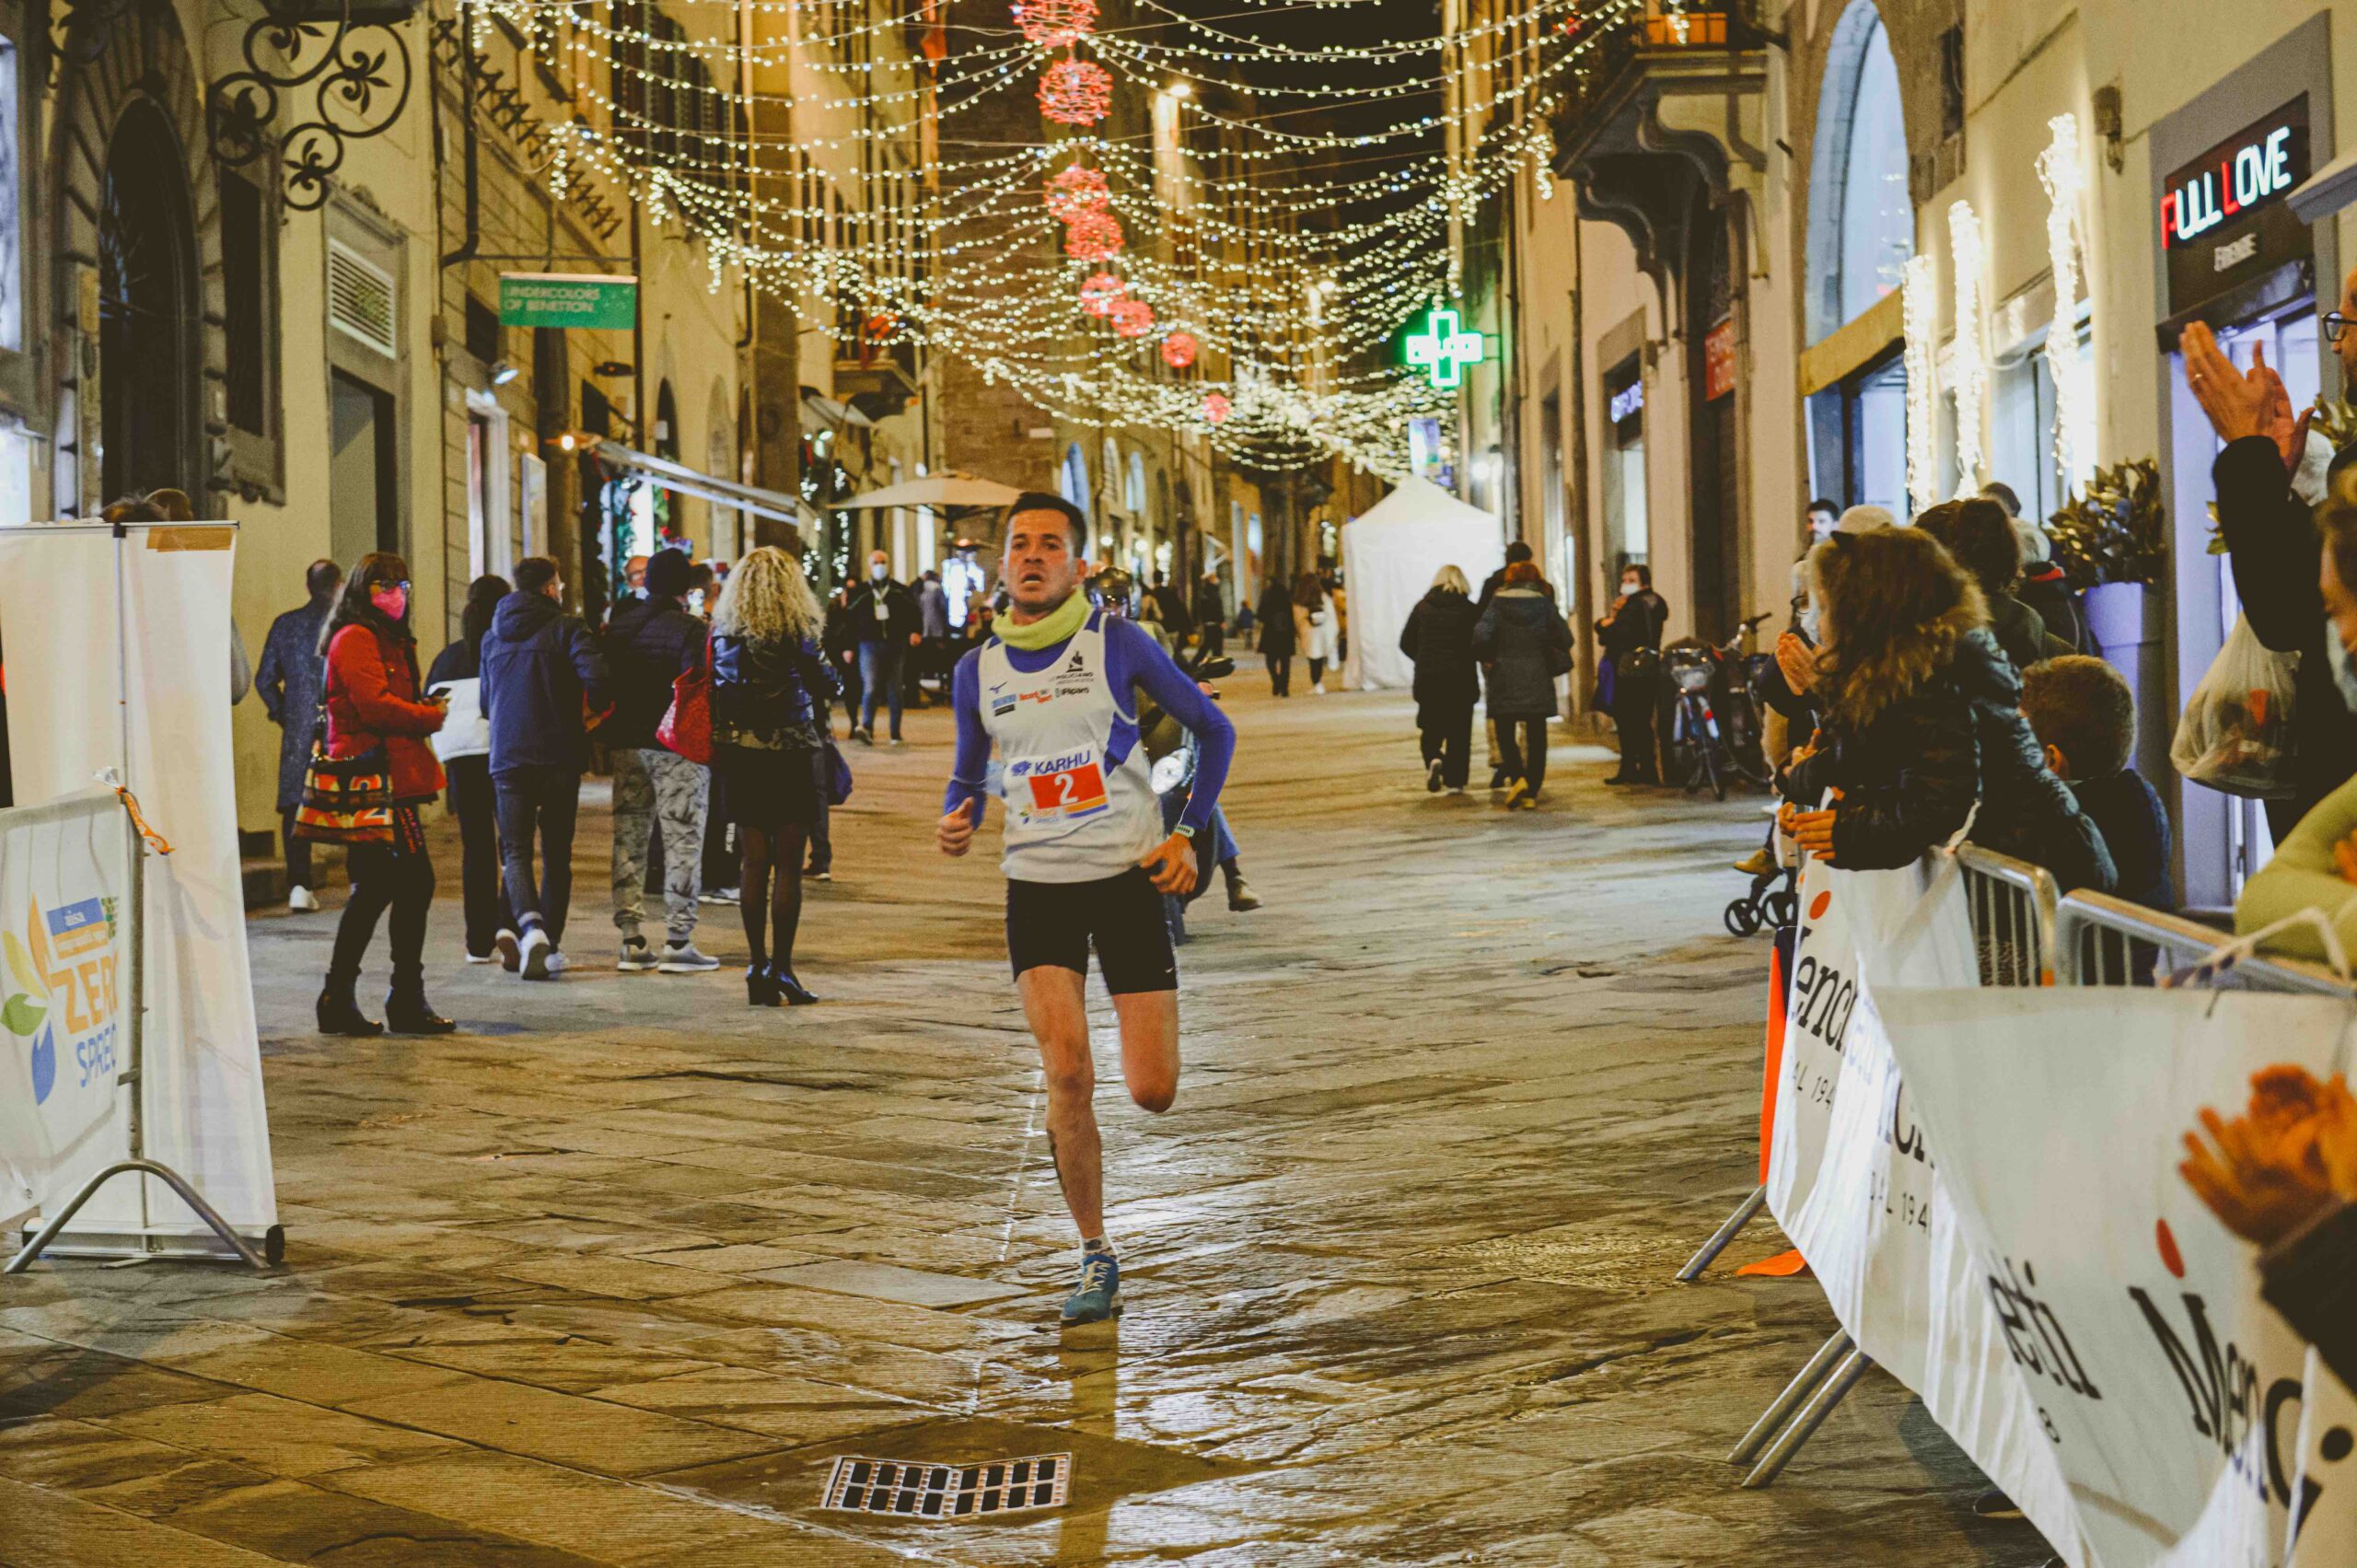 Stasera da piazza San Michele la 2ᵃ edizione della competizione City Trail